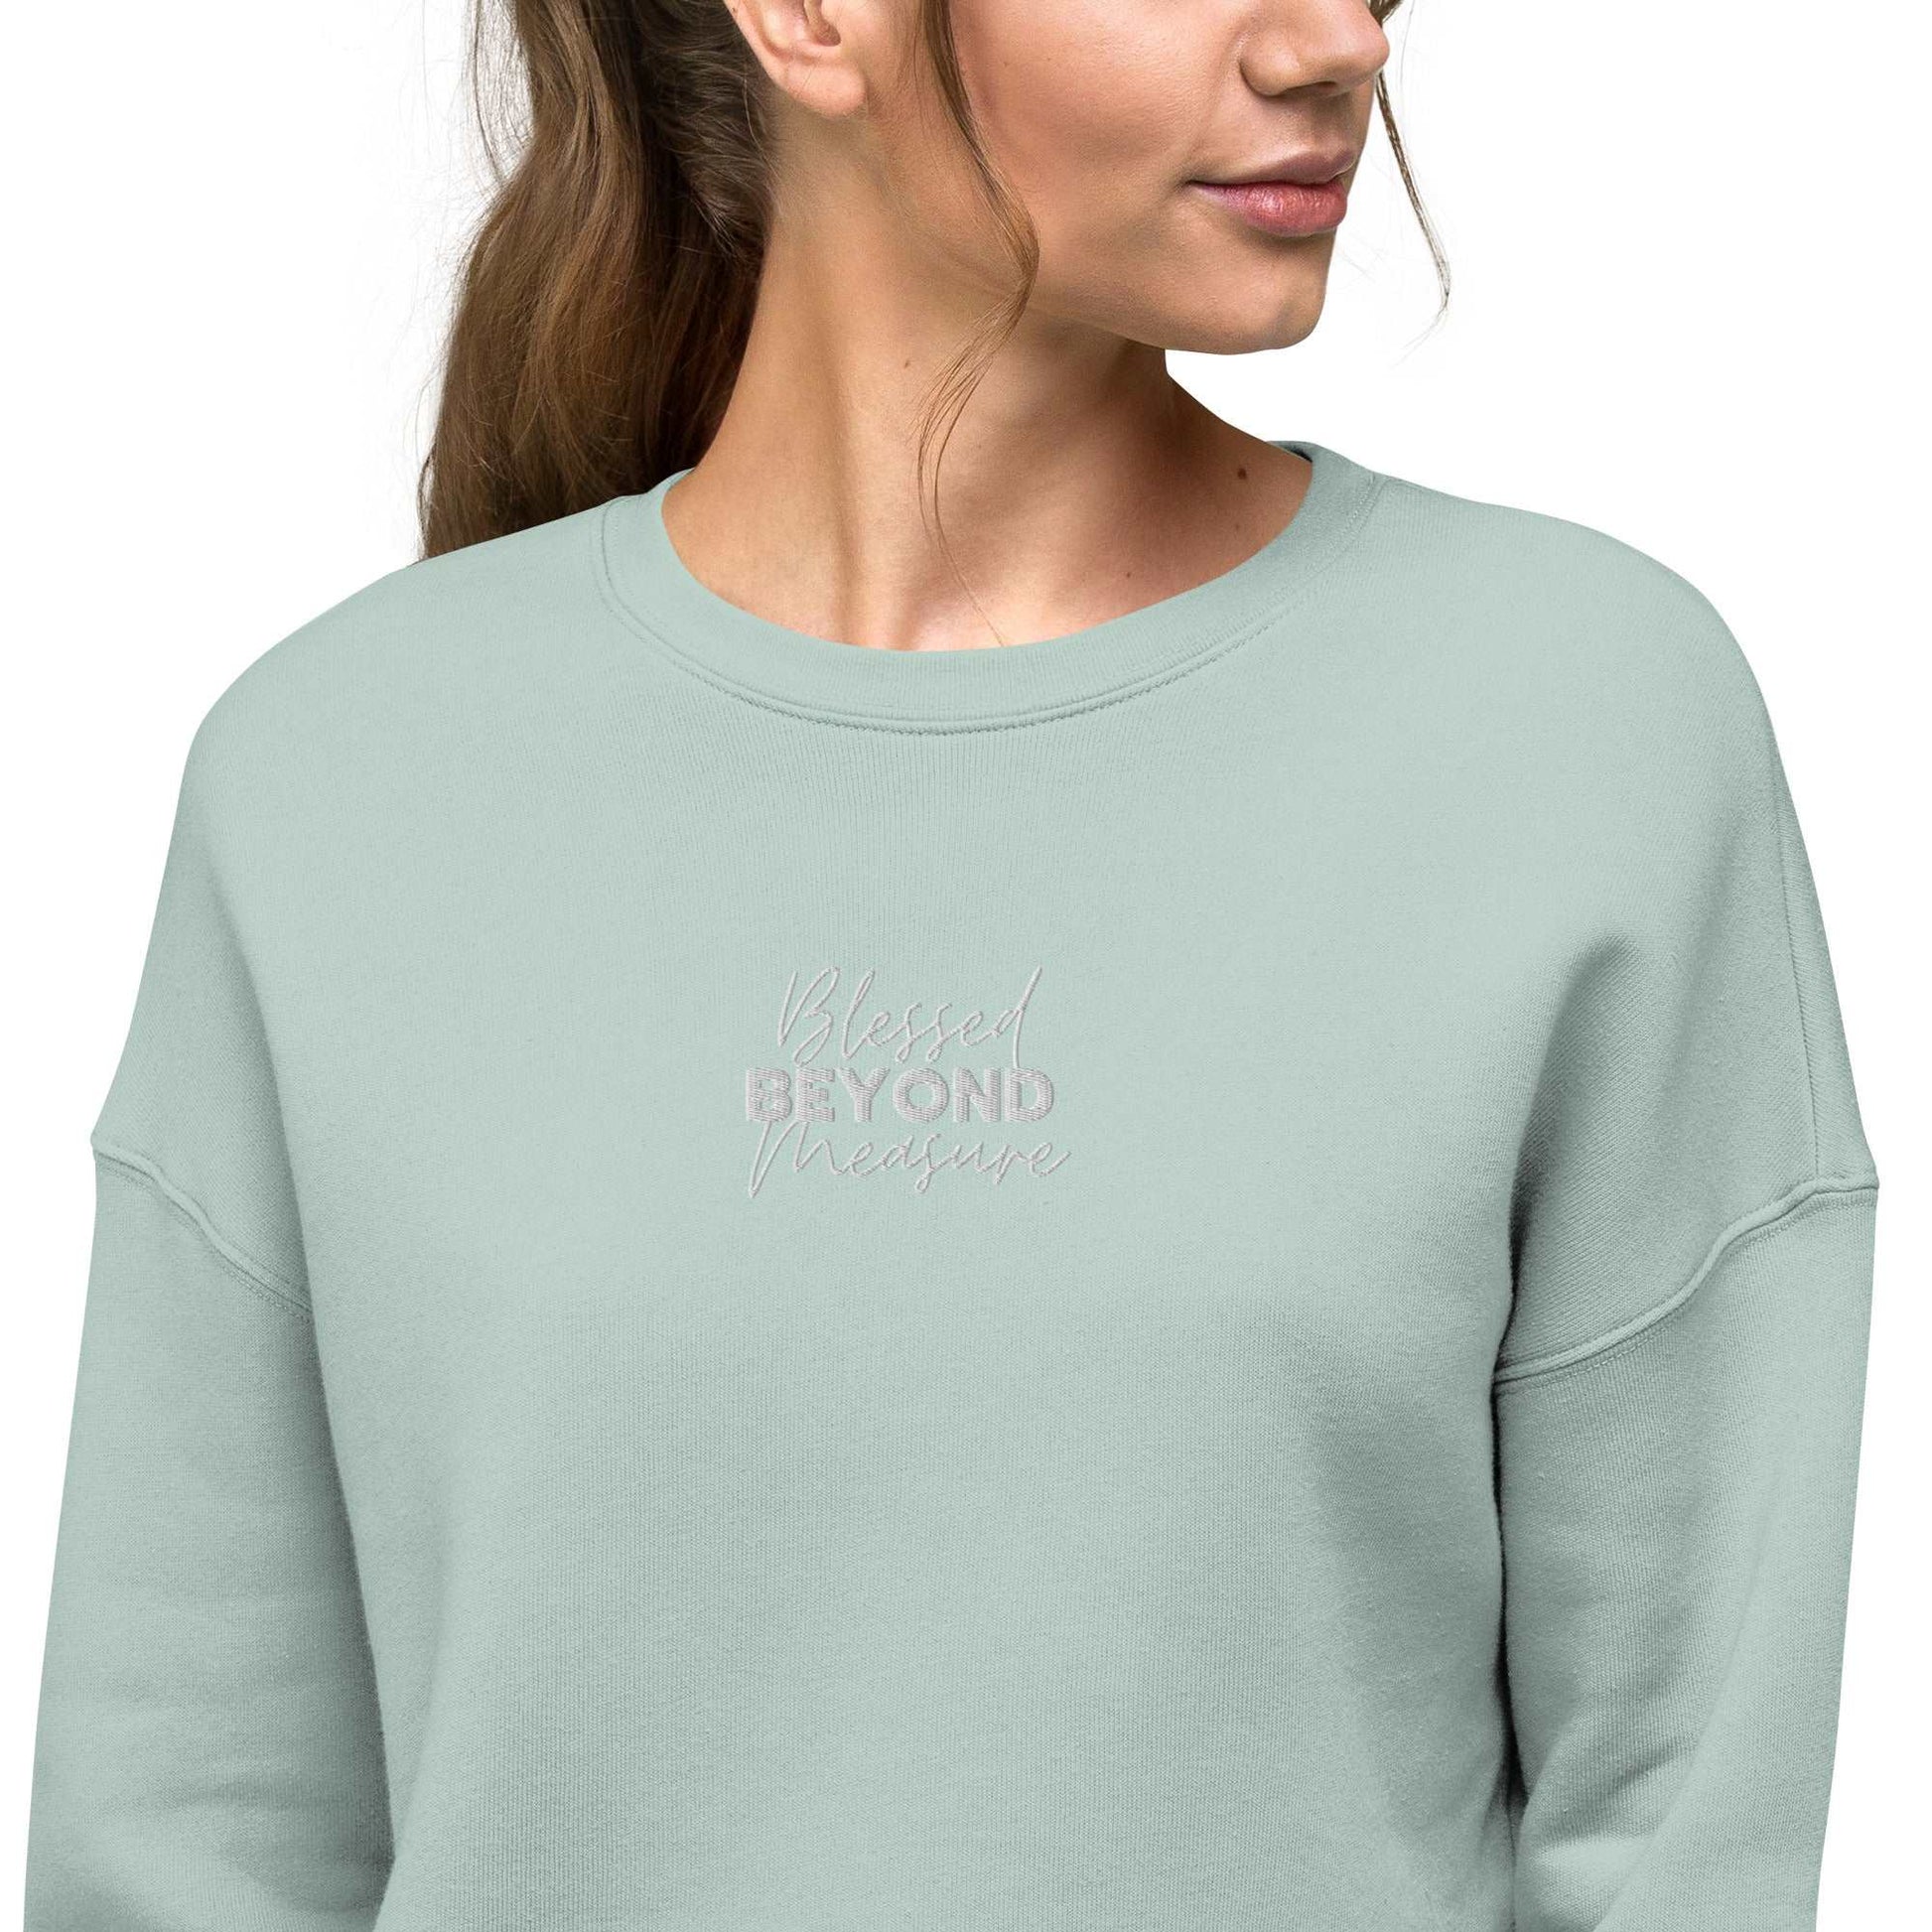 Blessed Beyond Measure - Crop Sweatshirt